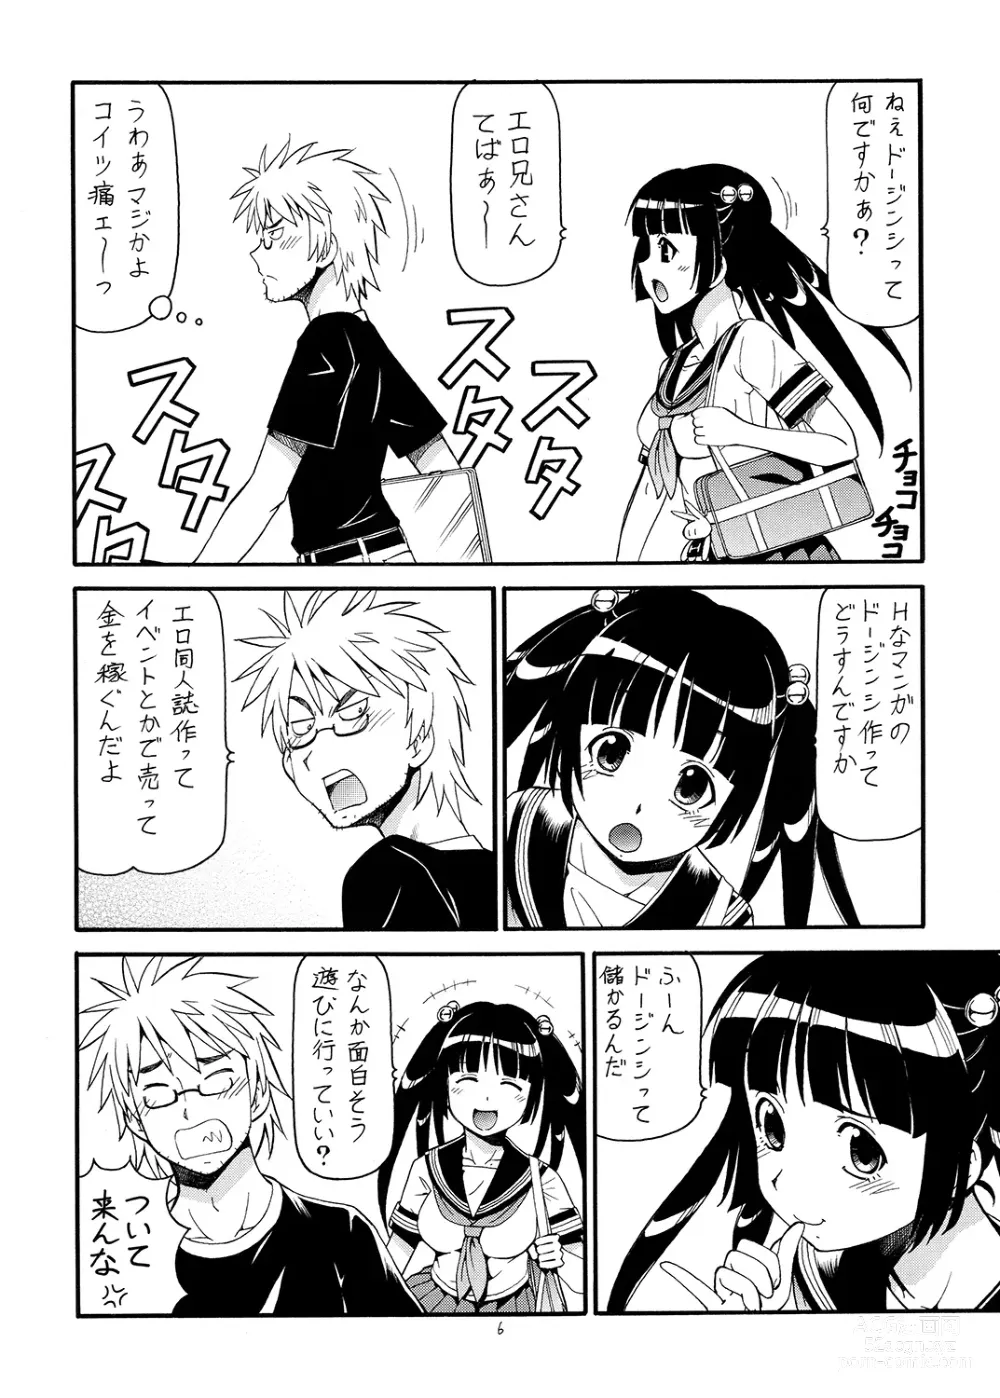 Page 7 of doujinshi Ita Yome Monogatari